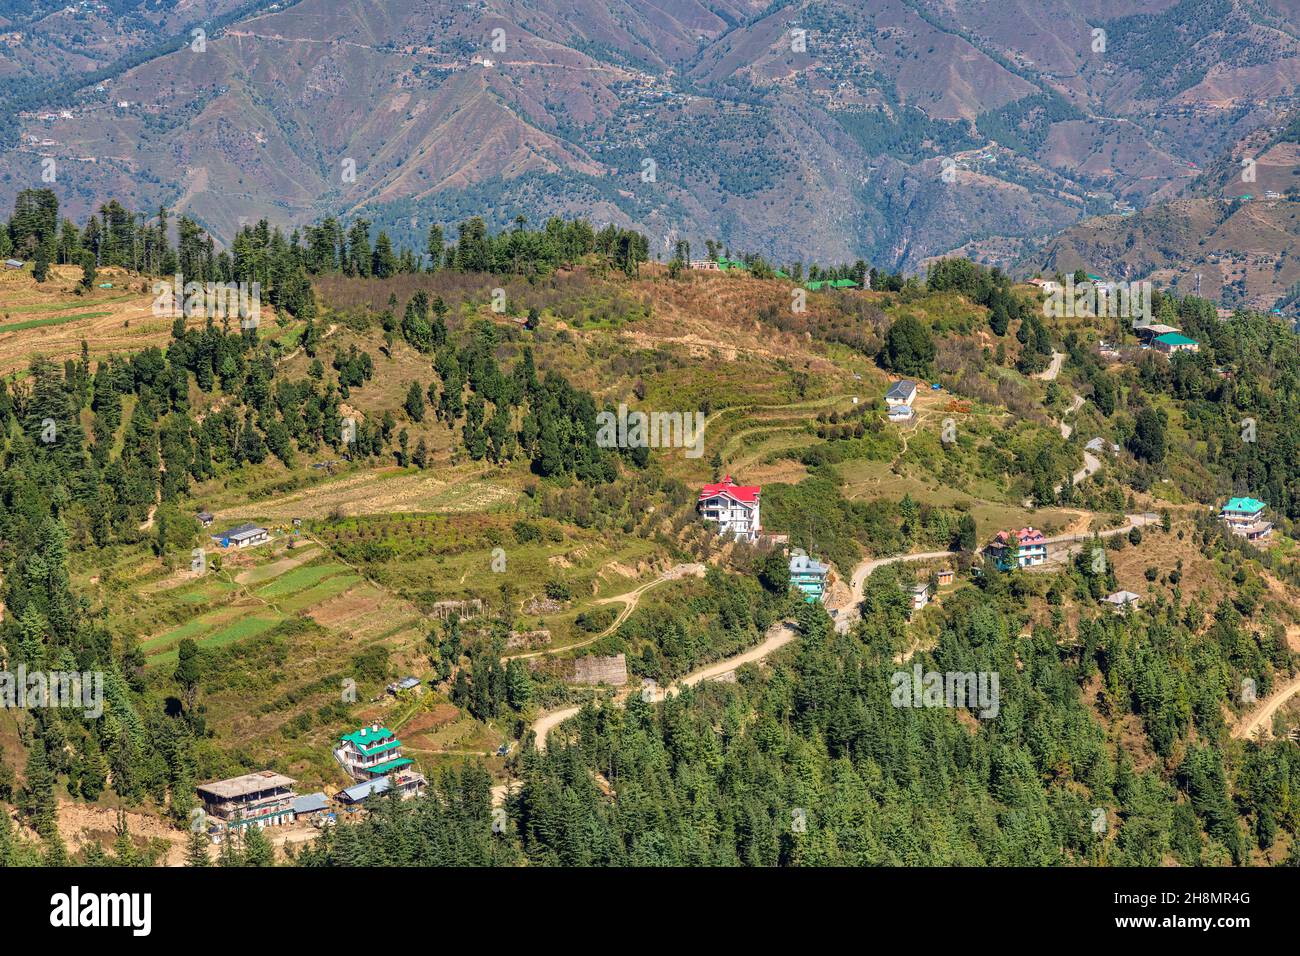 Escénica estación de la colina en Himachal Pradesh, India con vista aérea wof casas de pueblo en las laderas de montaña con paisaje pintoresco Himalaya en Sarahan Foto de stock